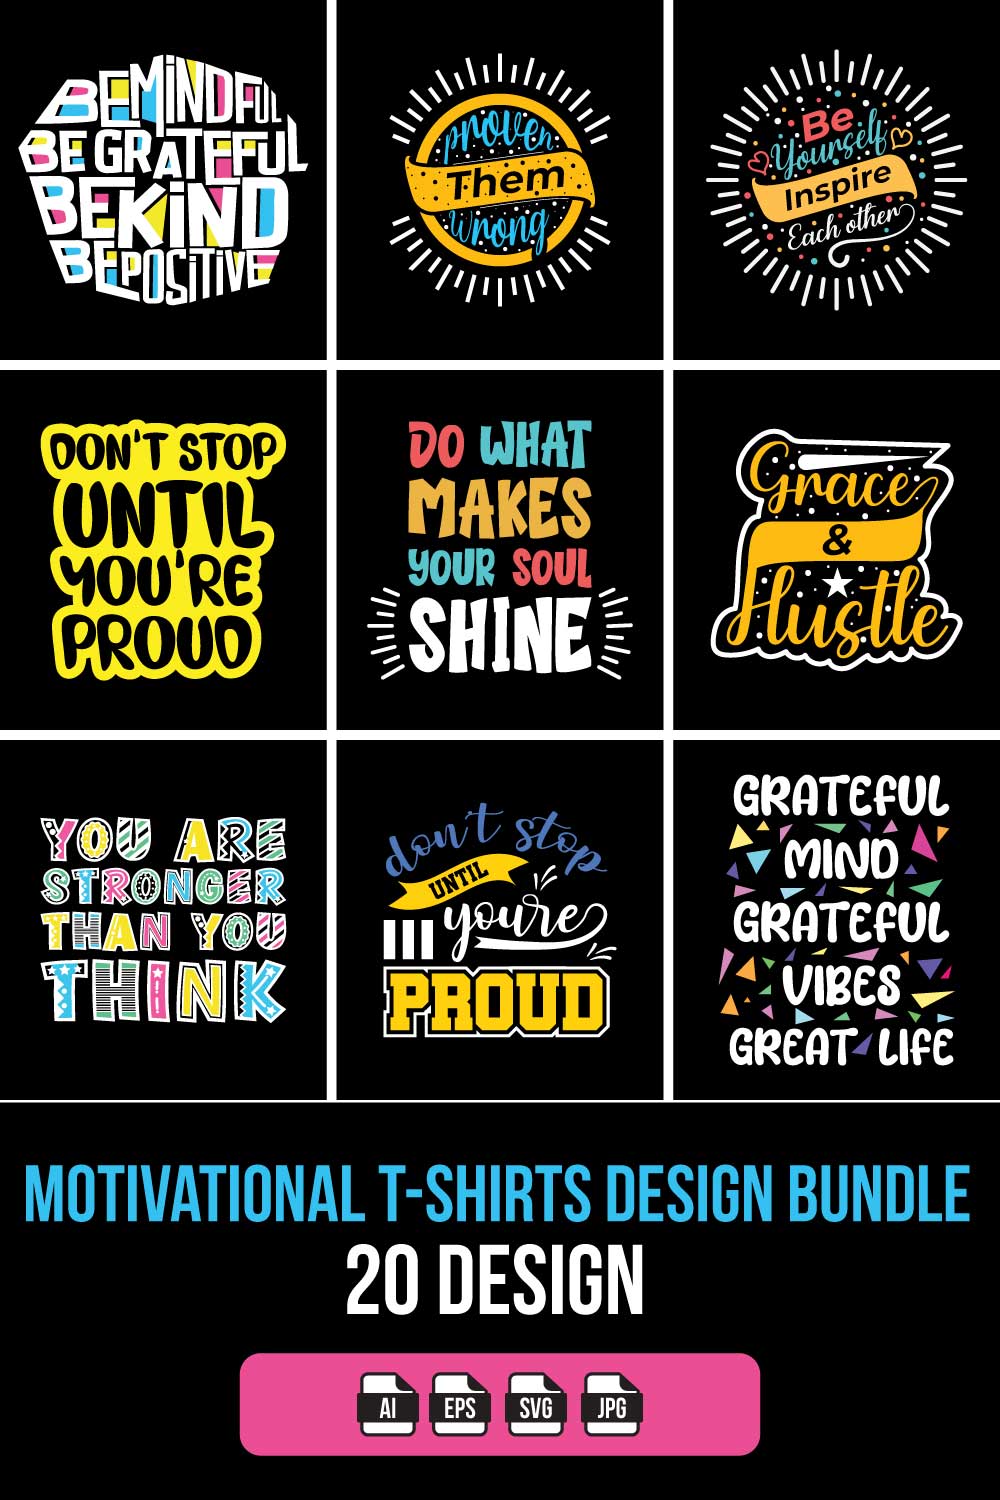 Motivational T-Shirts Design Bundle pinterest preview image.